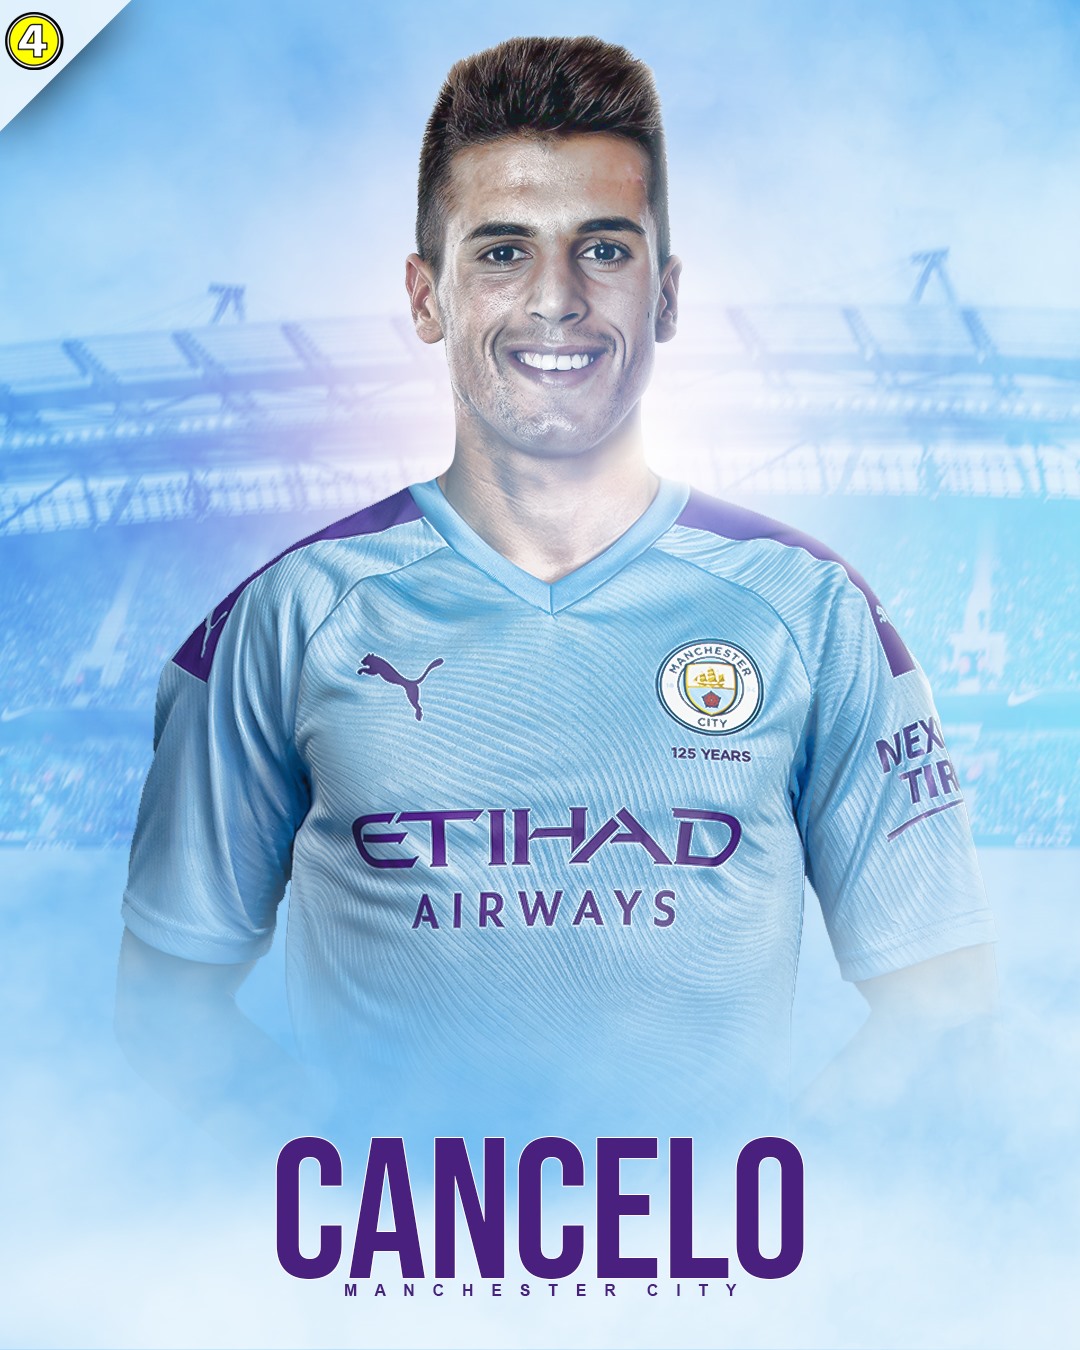 Official Jo O Cancelo Manchester City